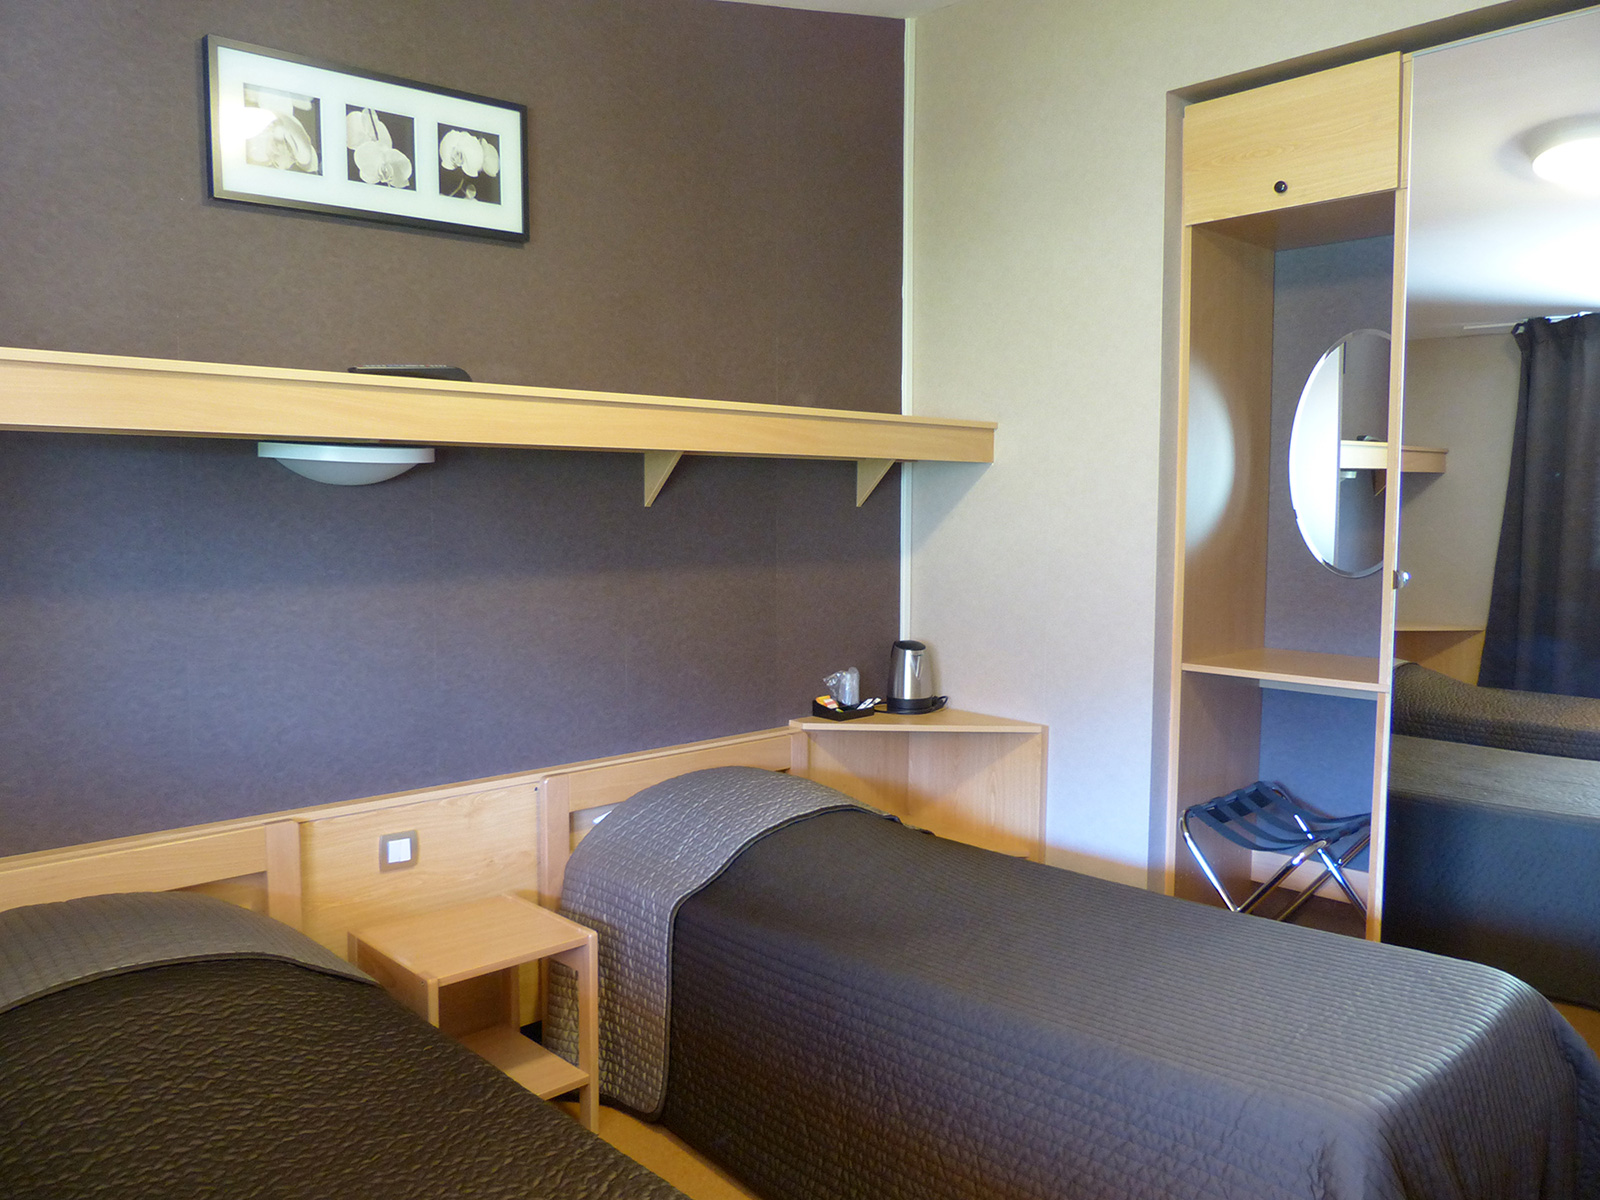 Chambre avec 2 lits simples de l'hôtel des Aveilles hébergement en Isère.